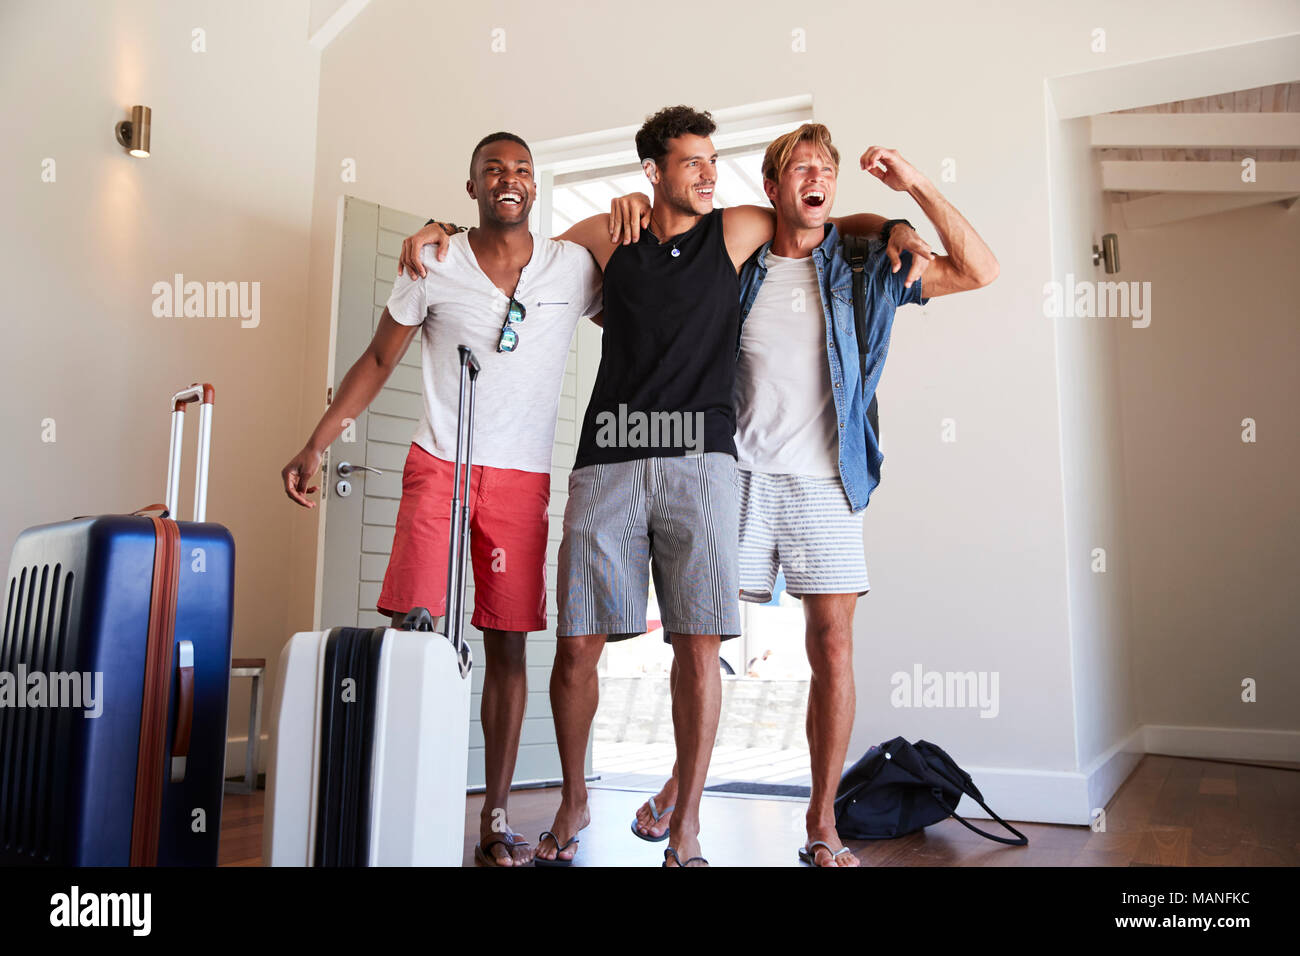 Gruppe von männlichen Freunden anreisen, am Sommer, Vermietung Stockfoto